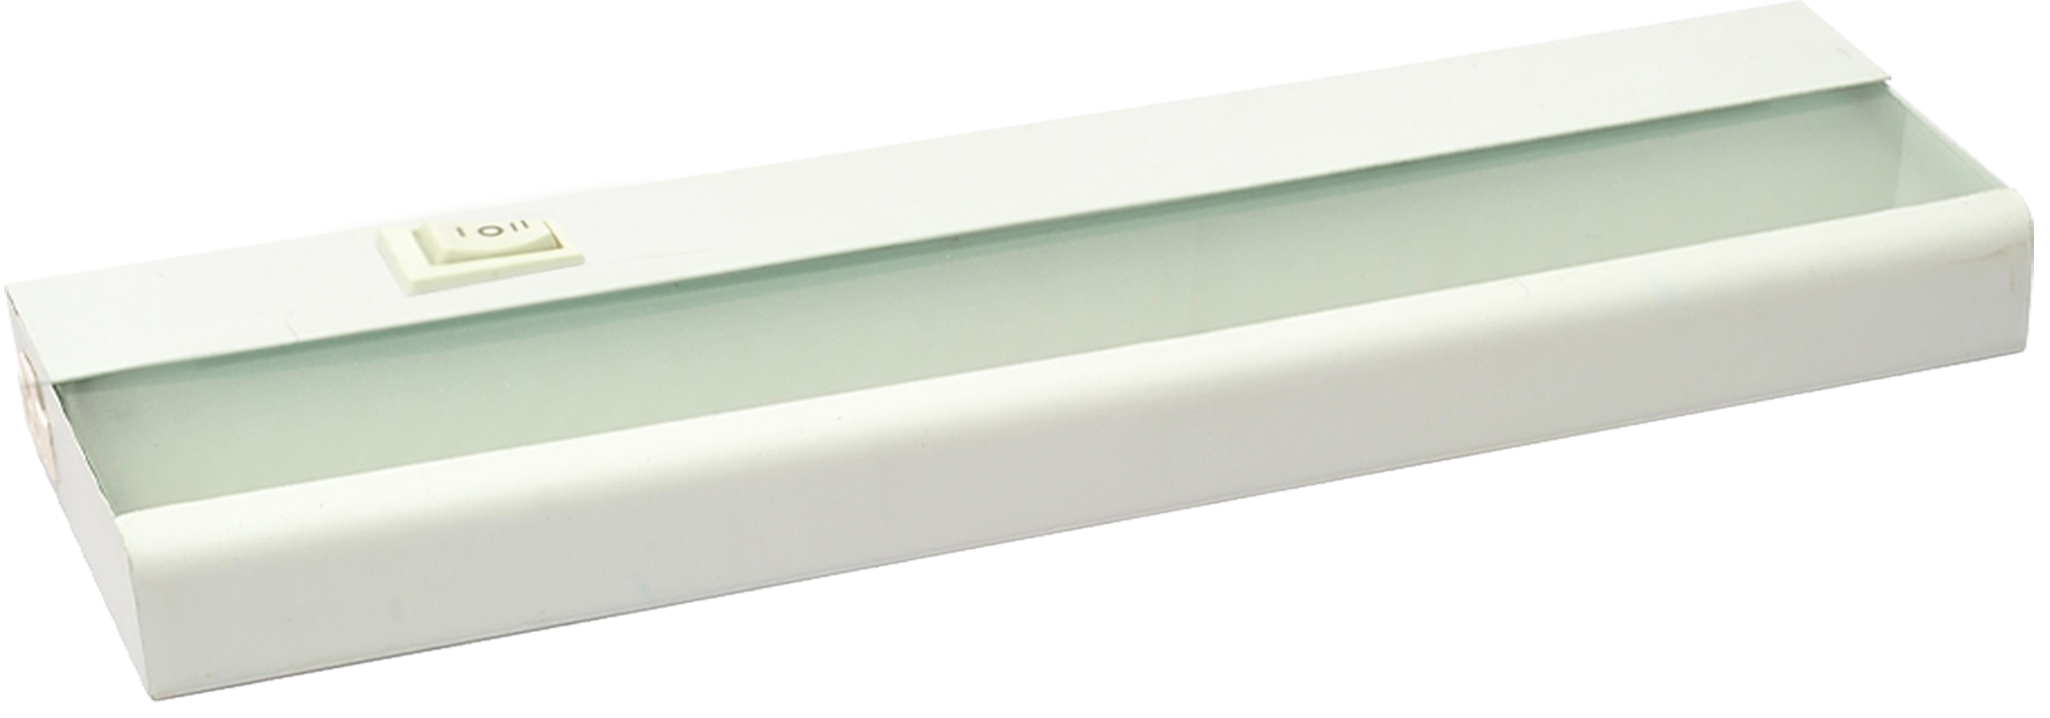 Amax Lighting Led under cabinet bar light 12X3.5 White